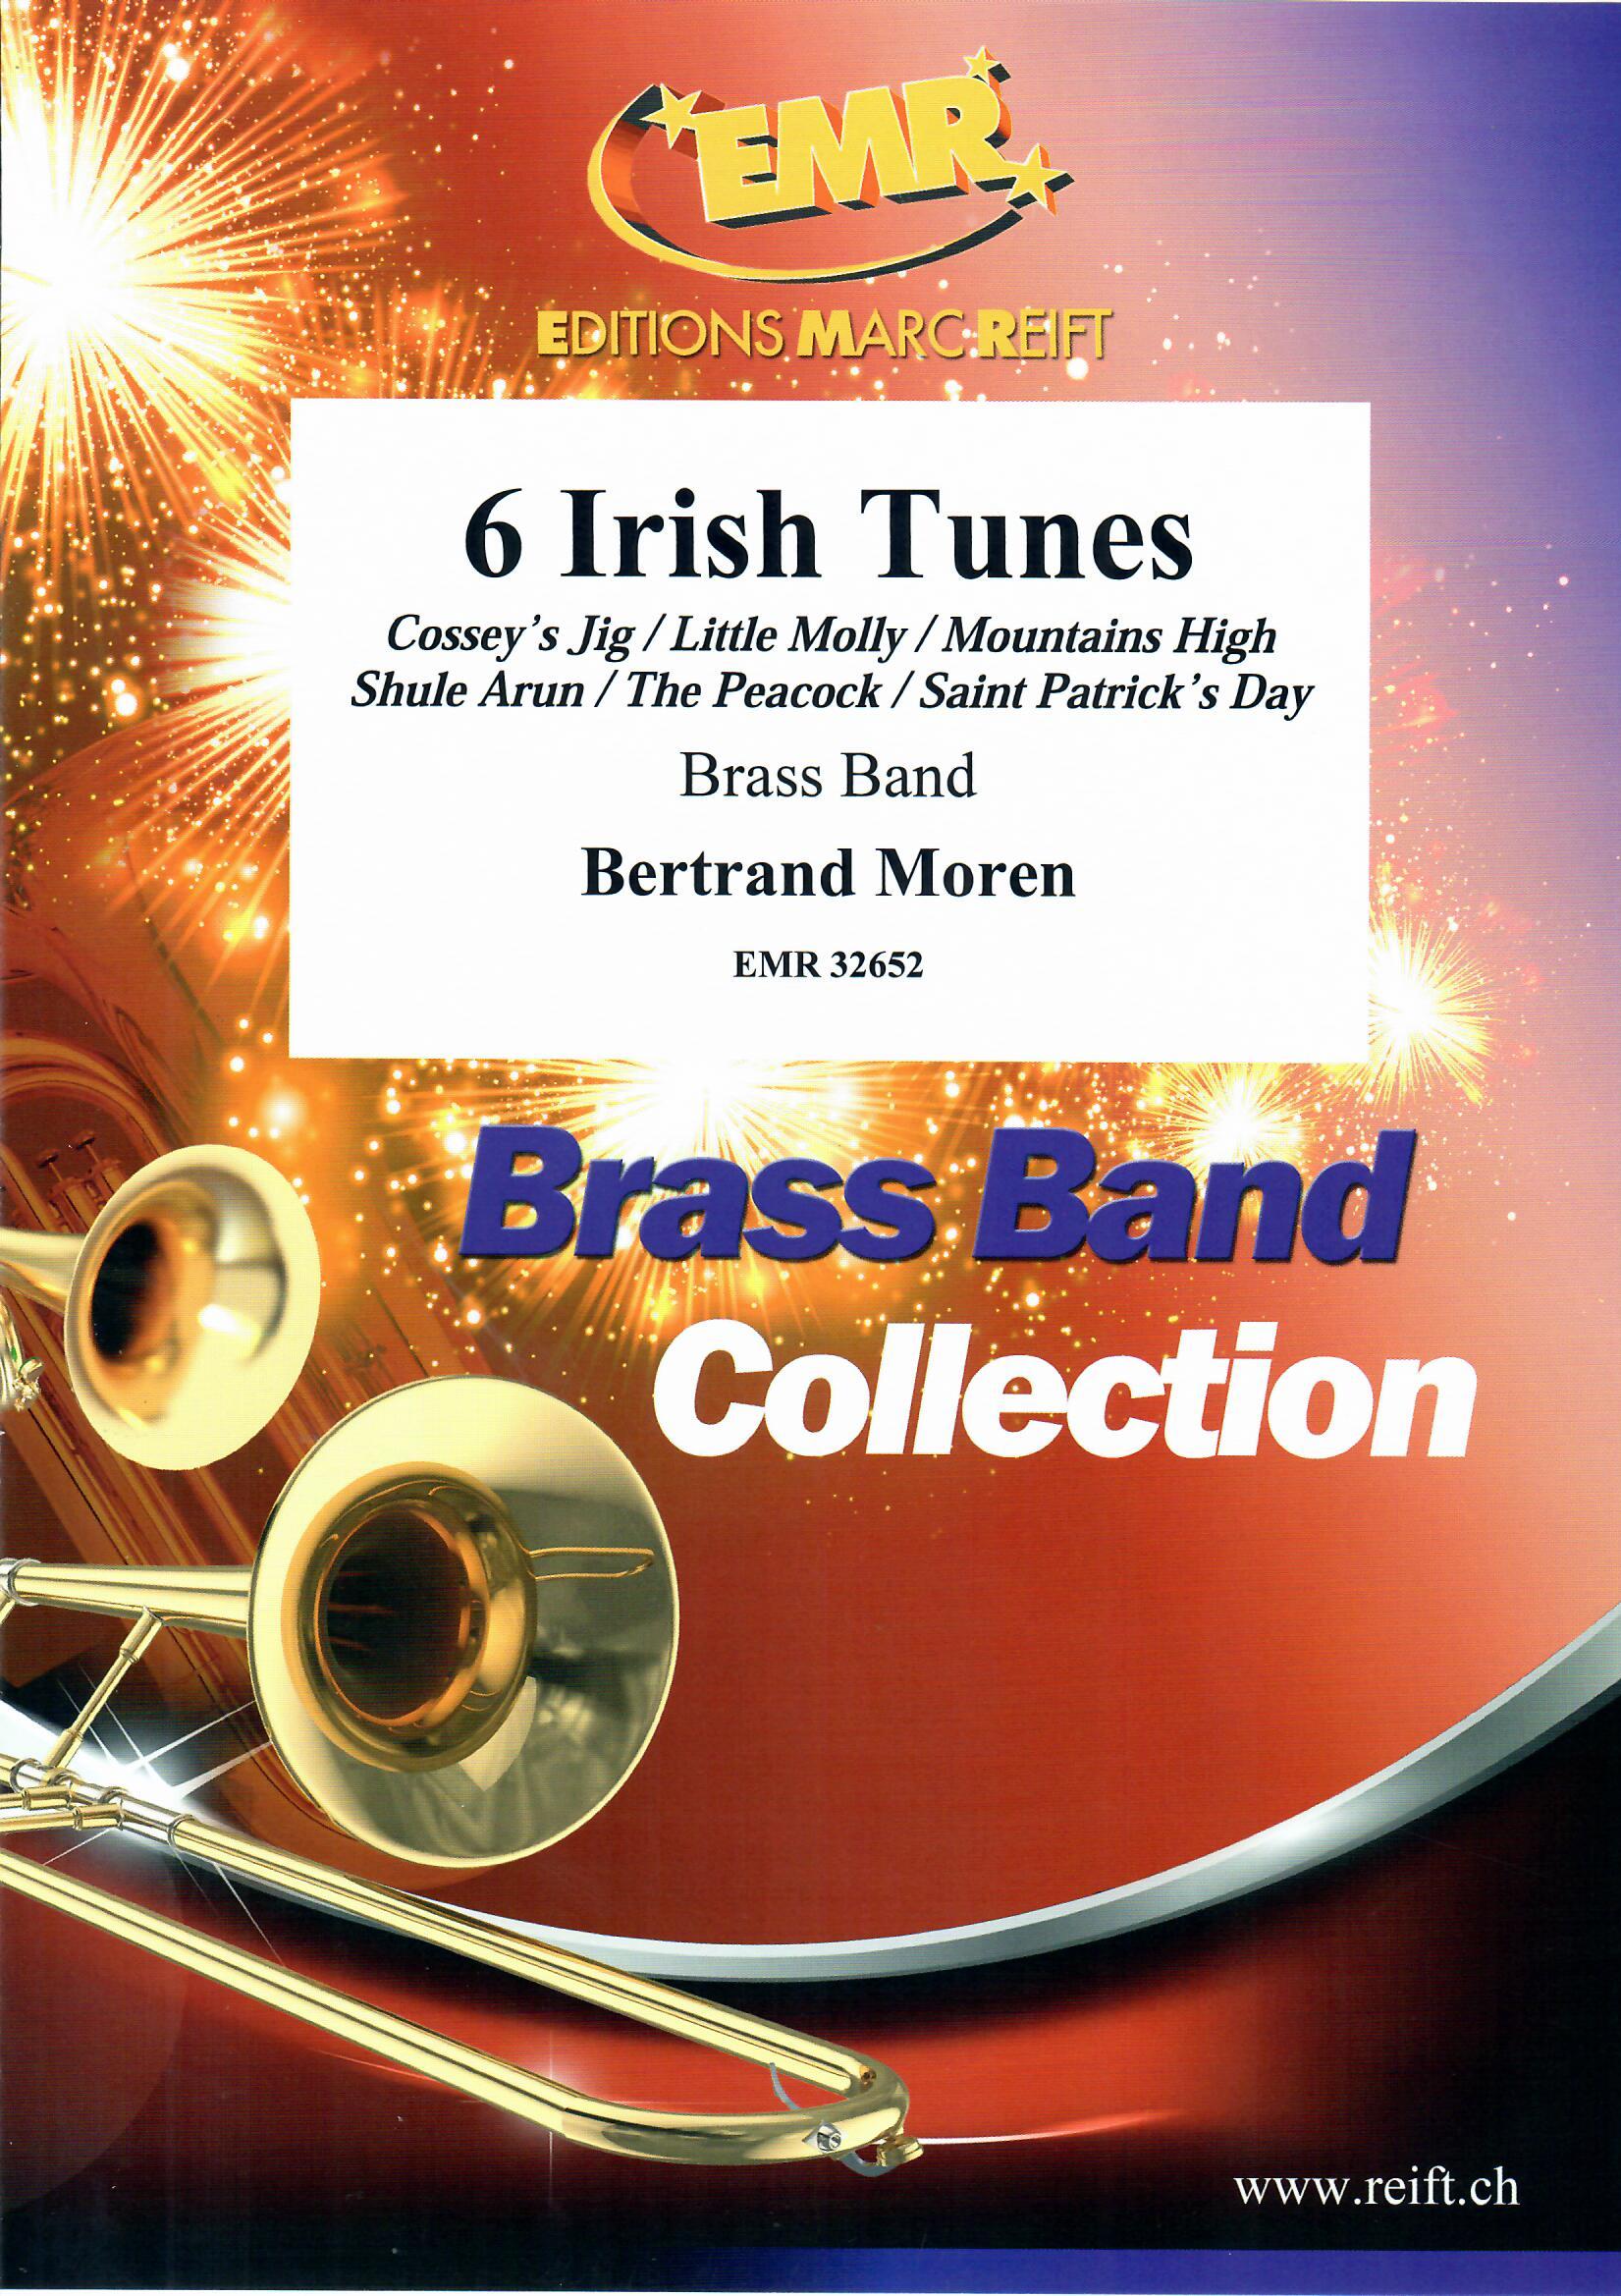 6 IRISH TUNES - Parts & Score, LIGHT CONCERT MUSIC